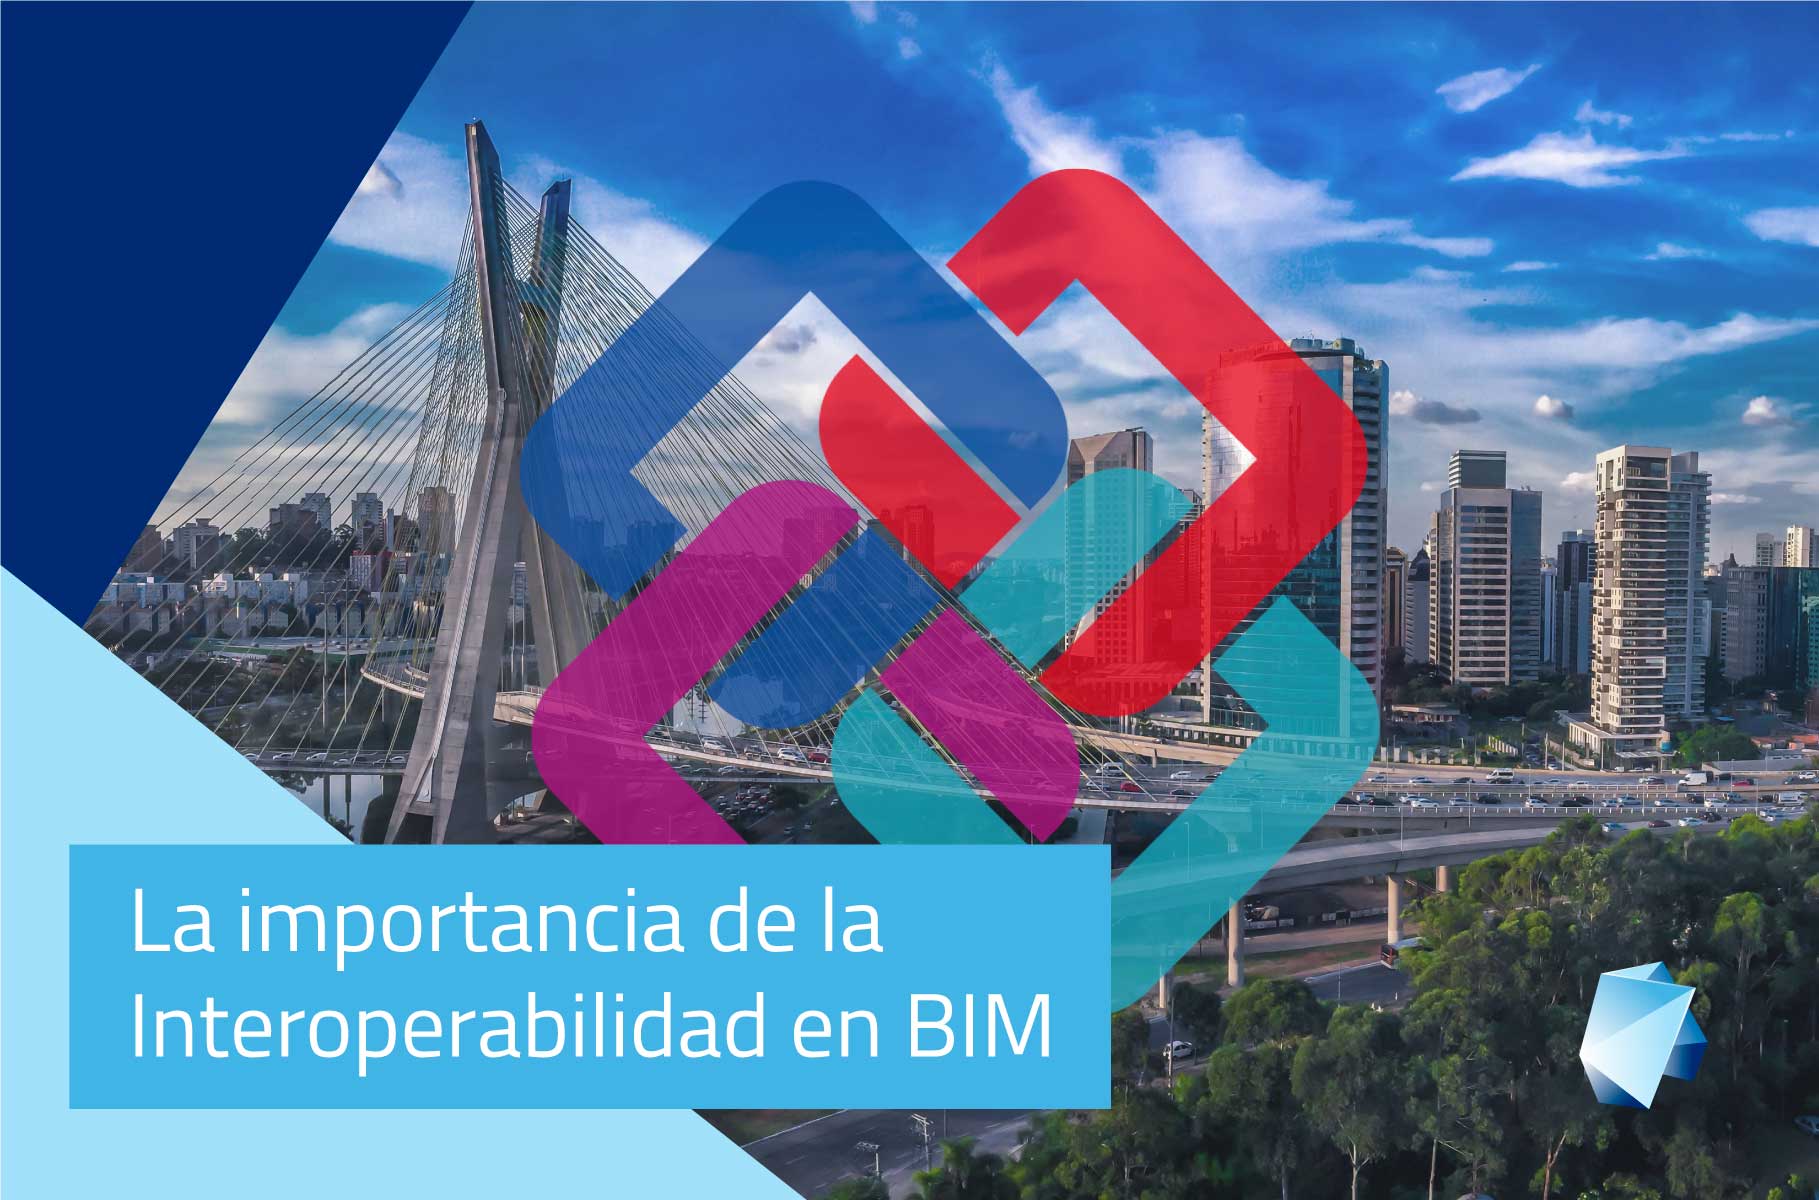 La interoperabilidad en BIM y por qué hacer el Curso Online Interoperabilidad IFC